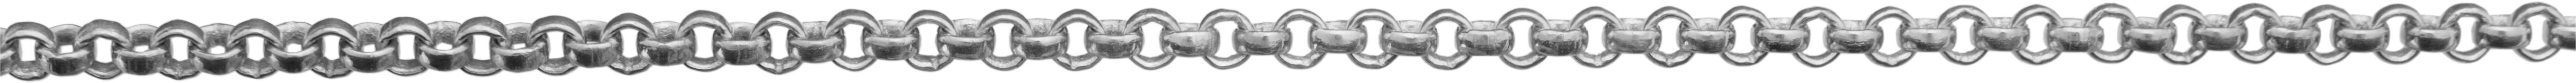 Pea chain silver 925/- Ø 2,50mm, fine-mesh